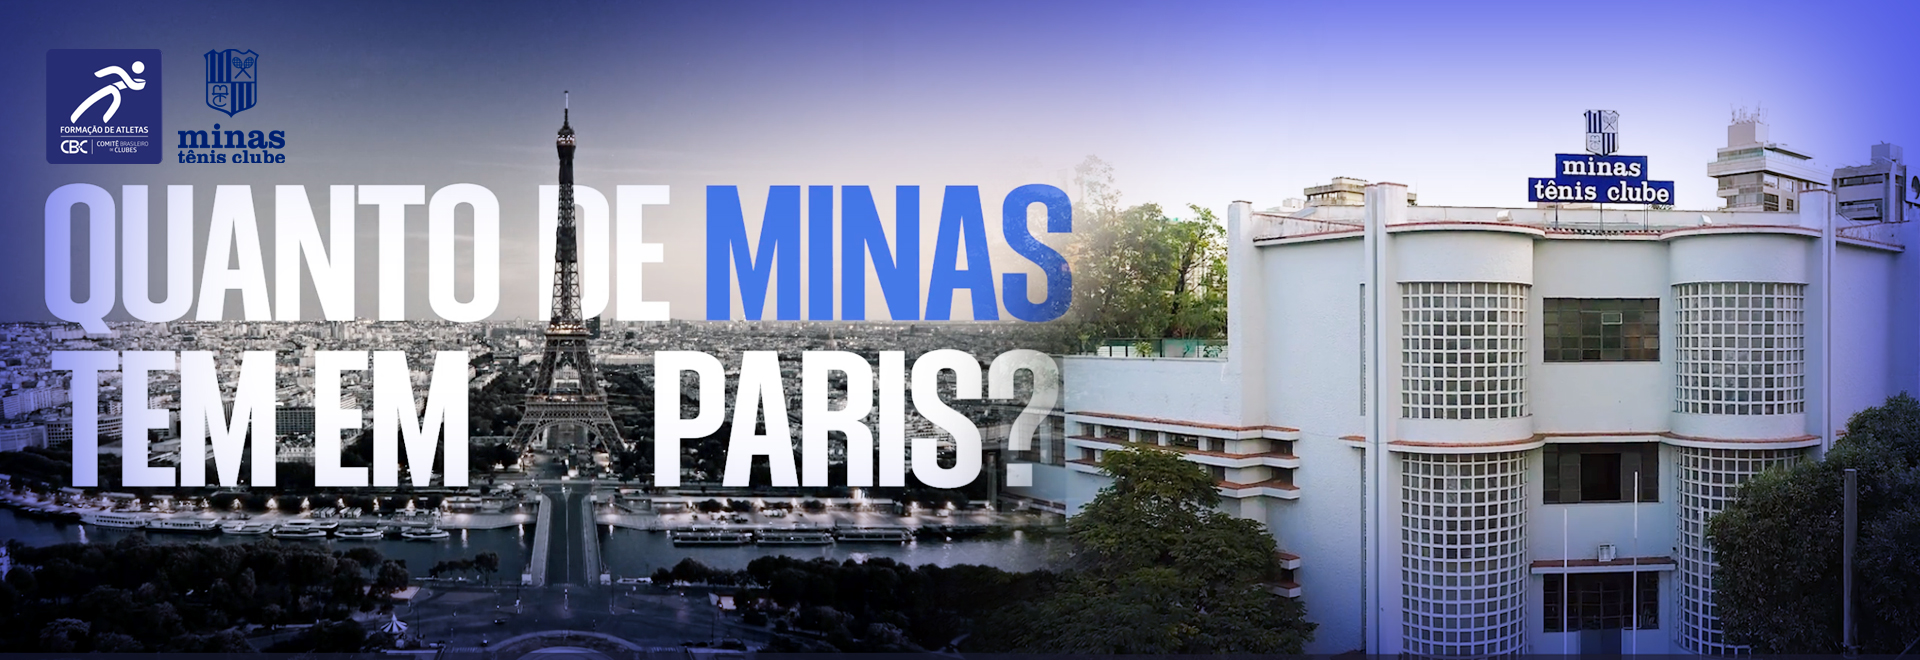 Minas publica vídeo em homenagem a um ano de Paris 2024.